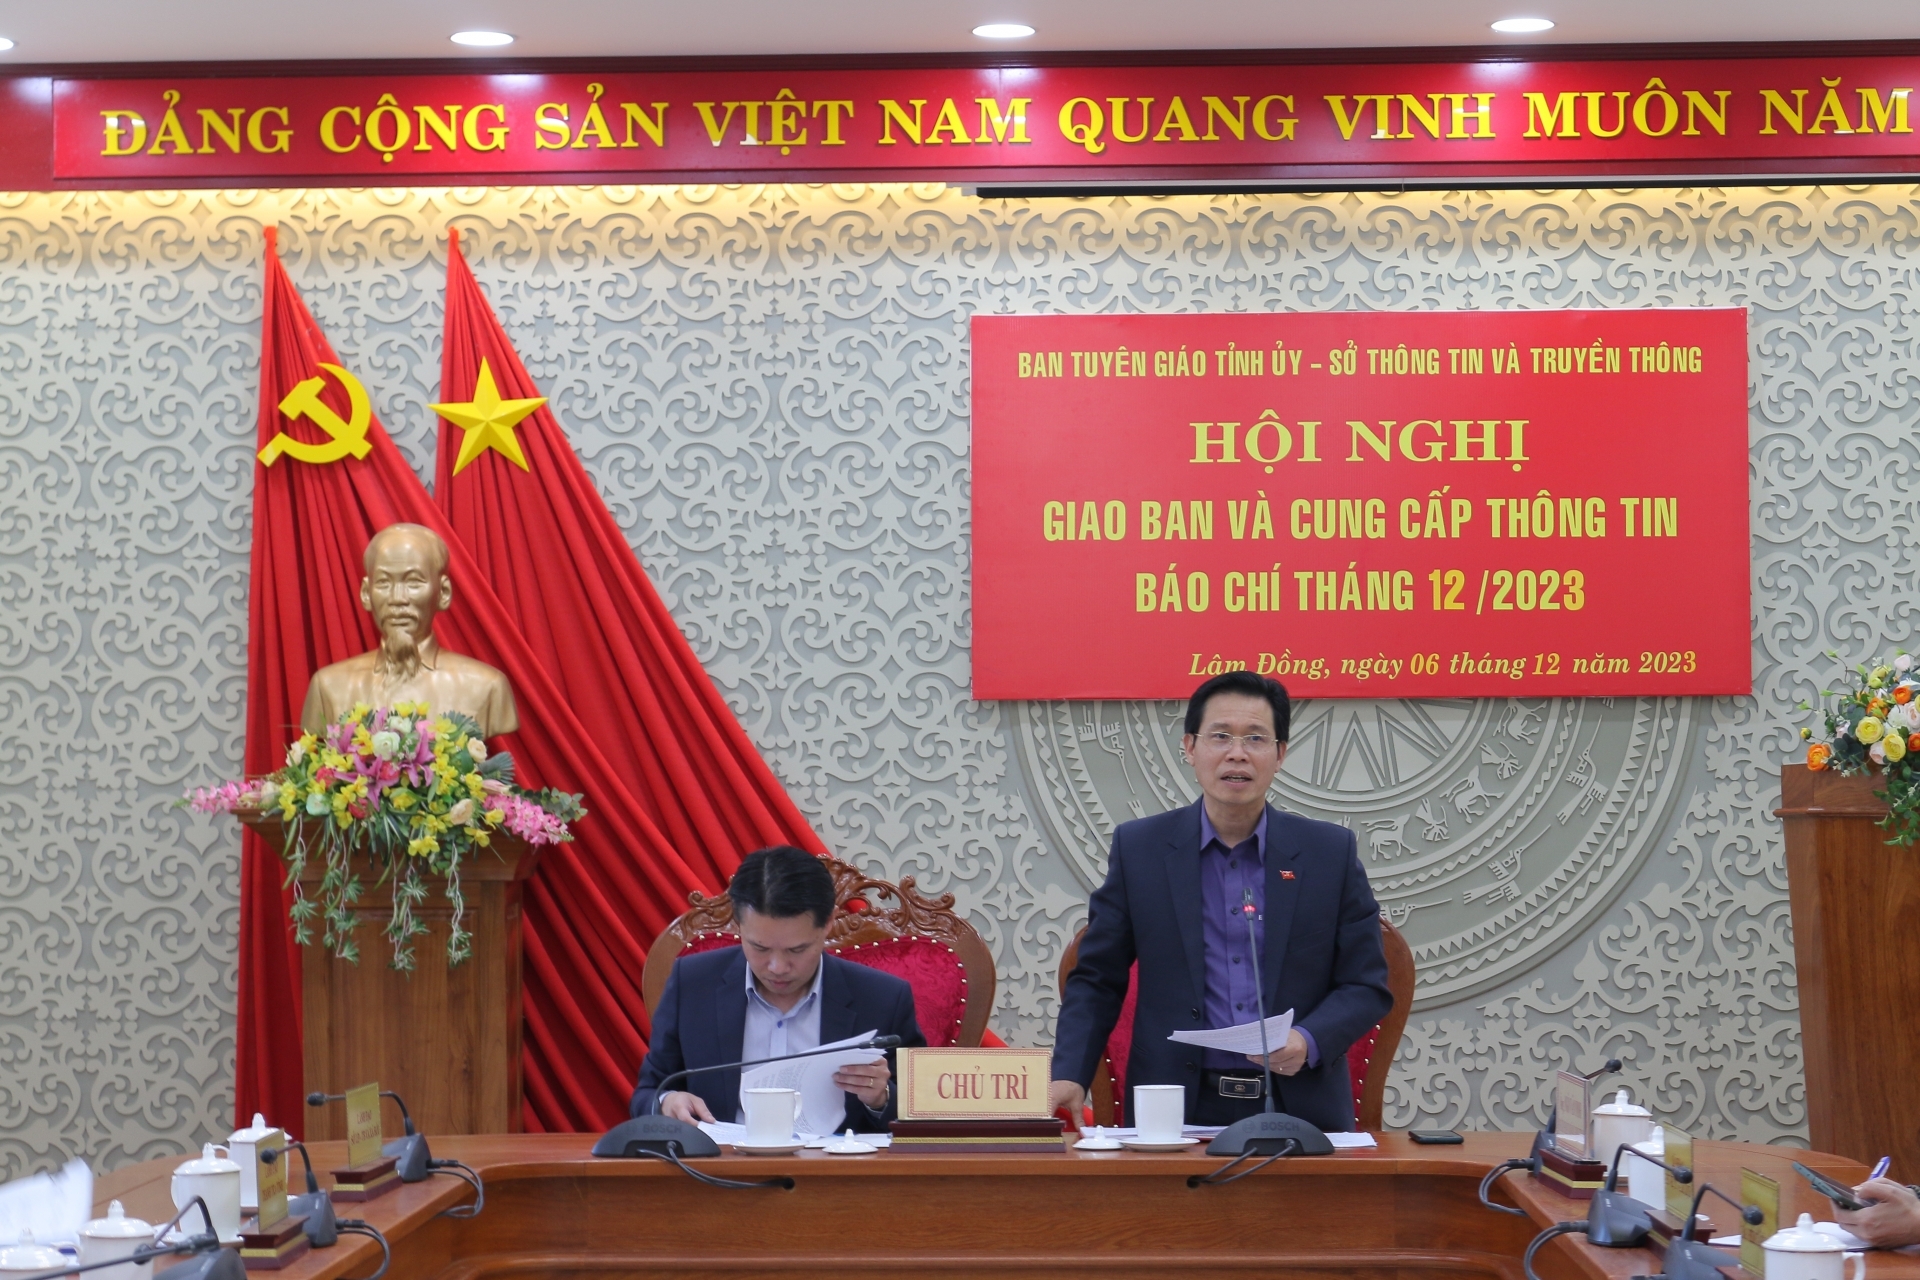 Lâm Đồng: Hội nghị giao ban báo chí tháng 12 năm 2023